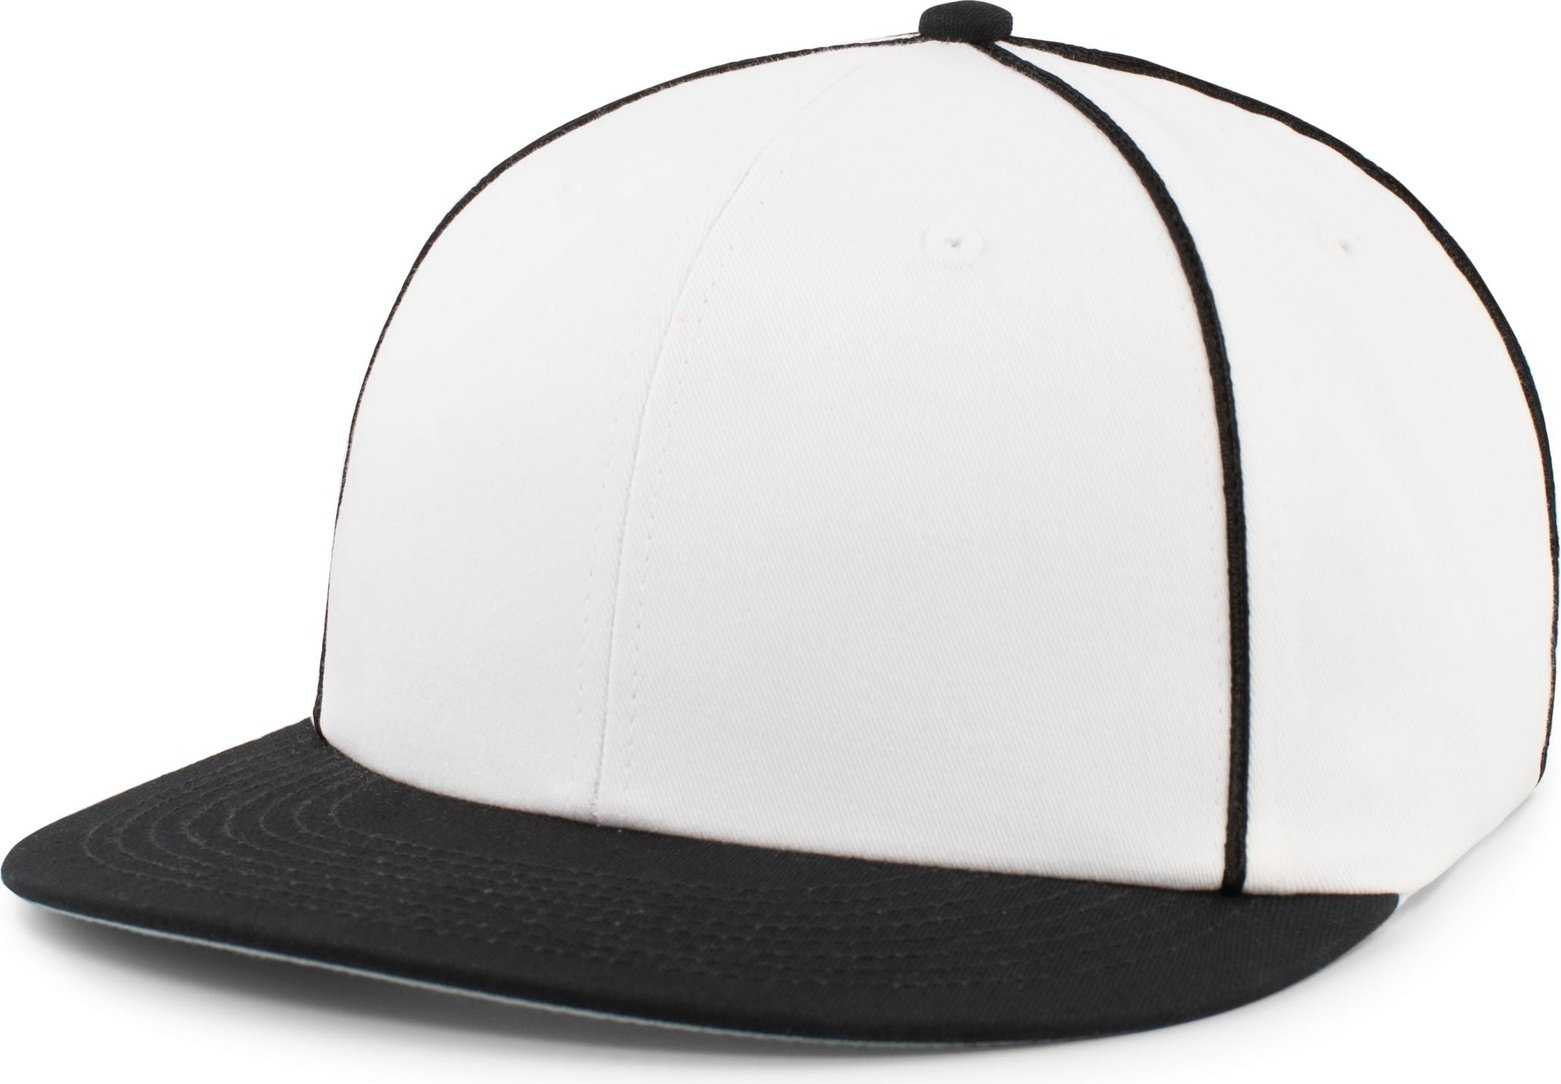 Pacific Headwear P820 Momentum Team Cap - White Black - HIT a Double